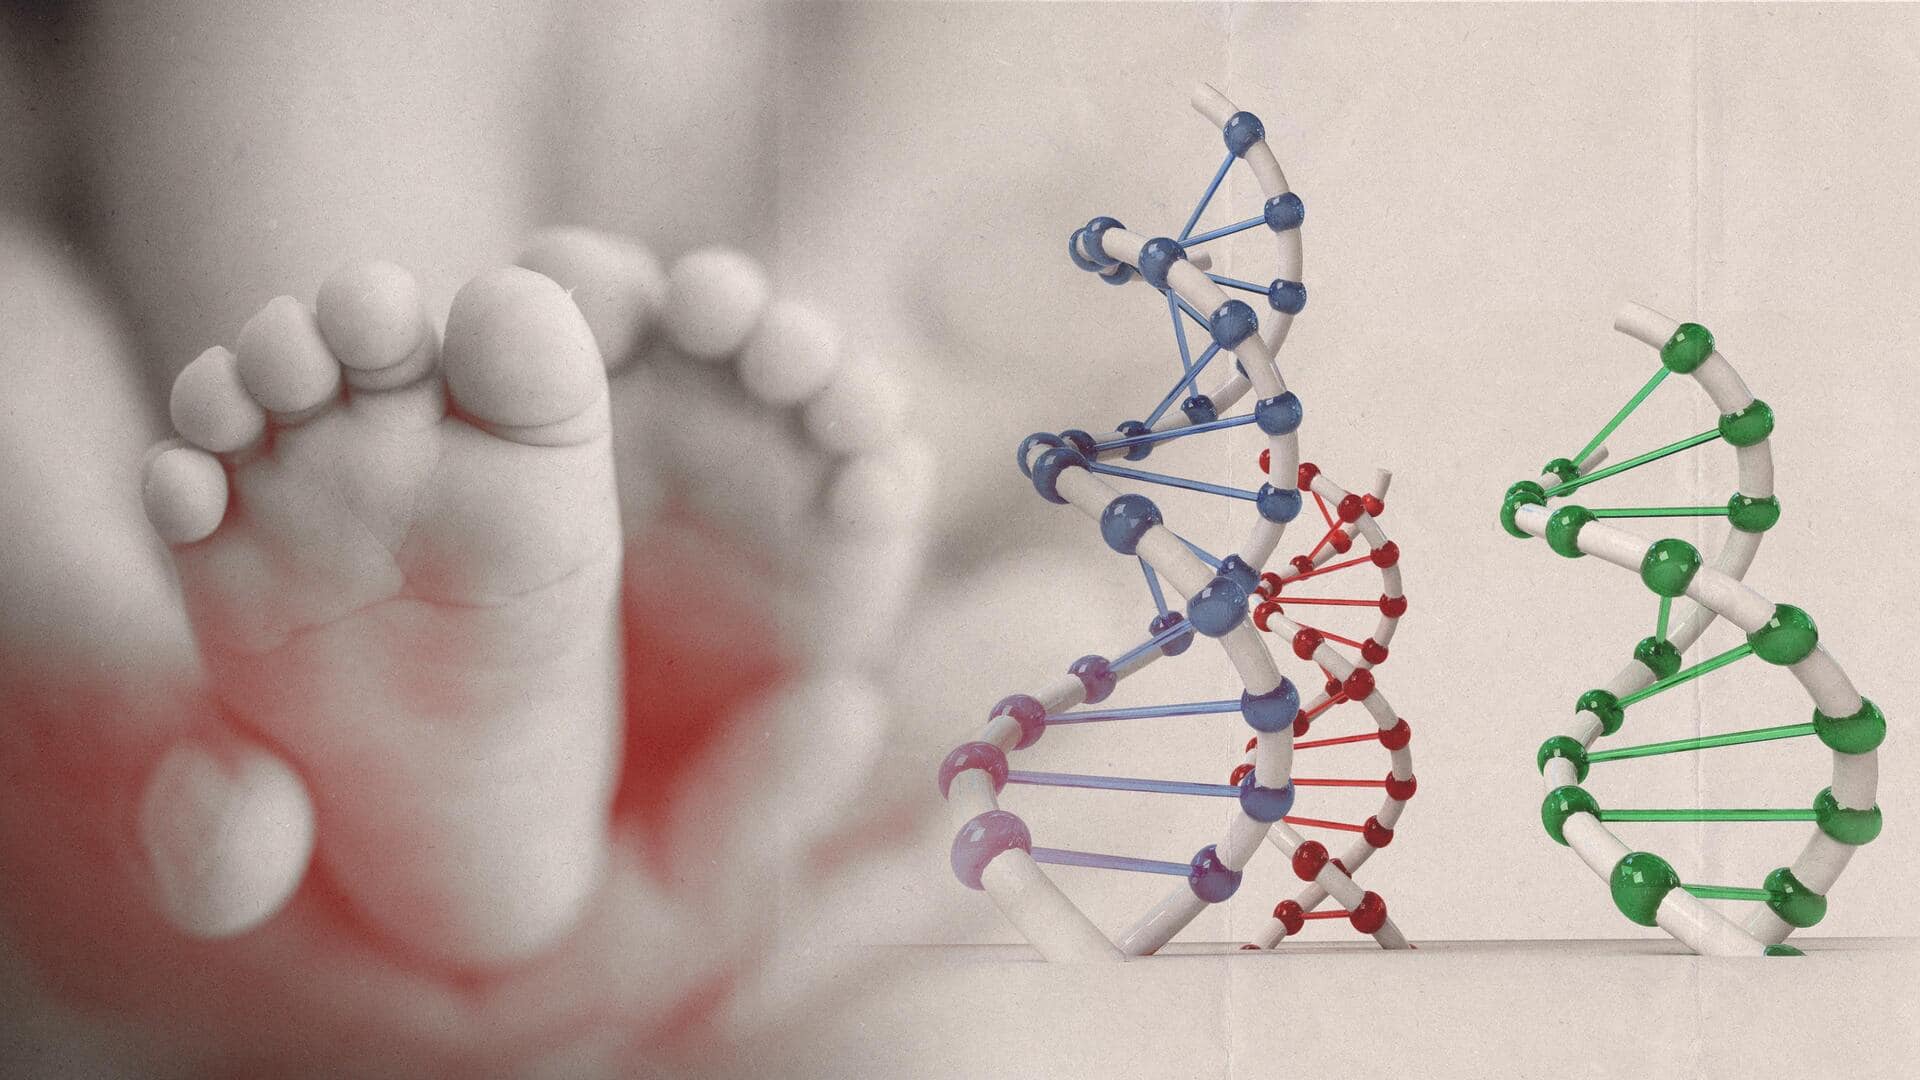 इंग्लैंड: 3 लोगों के DNA से तैयार बच्चे का हुआ जन्म, देश का पहला मामला